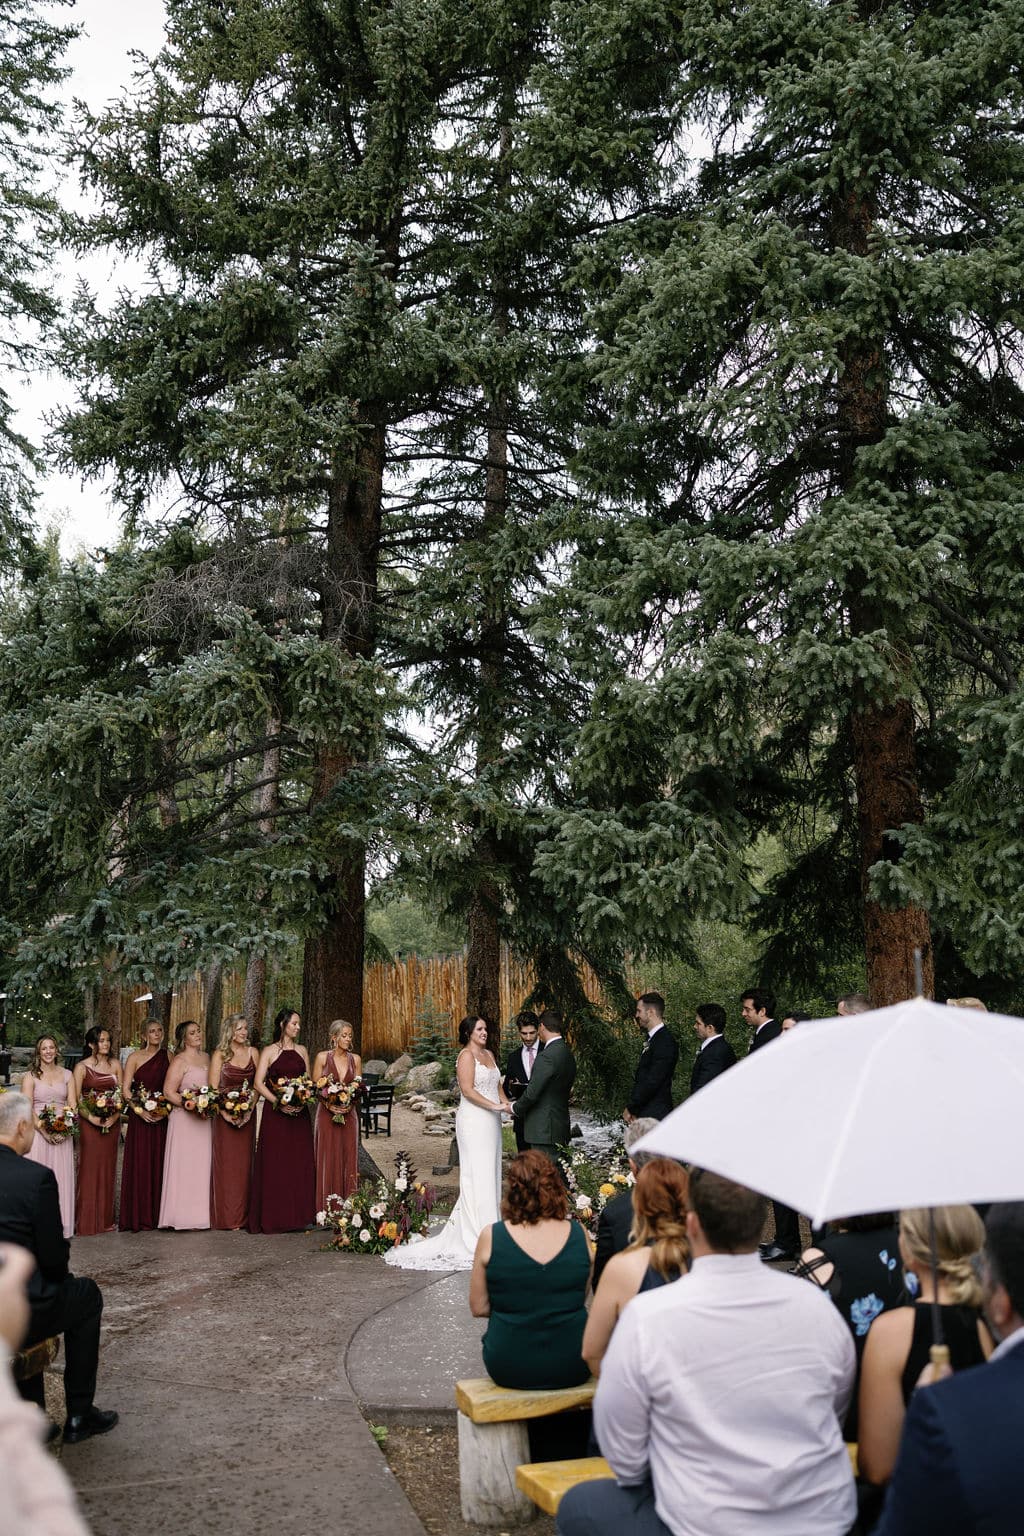 Rainy wedding ceremony at Blackstone Rivers Ranch in Idaho Springs Colorado